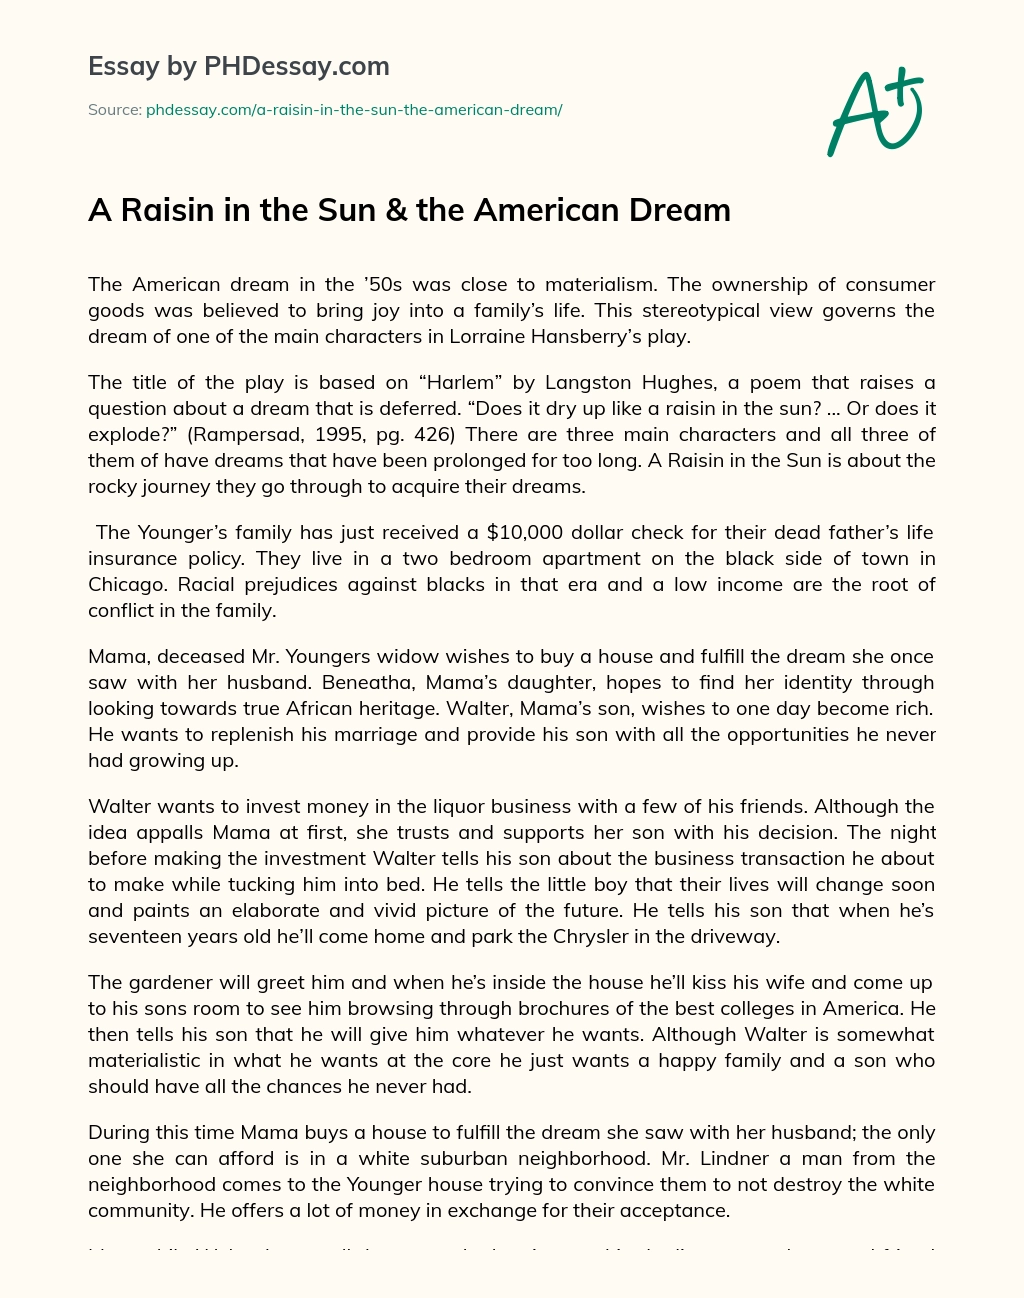 A Raisin in the Sun & the American Dream essay